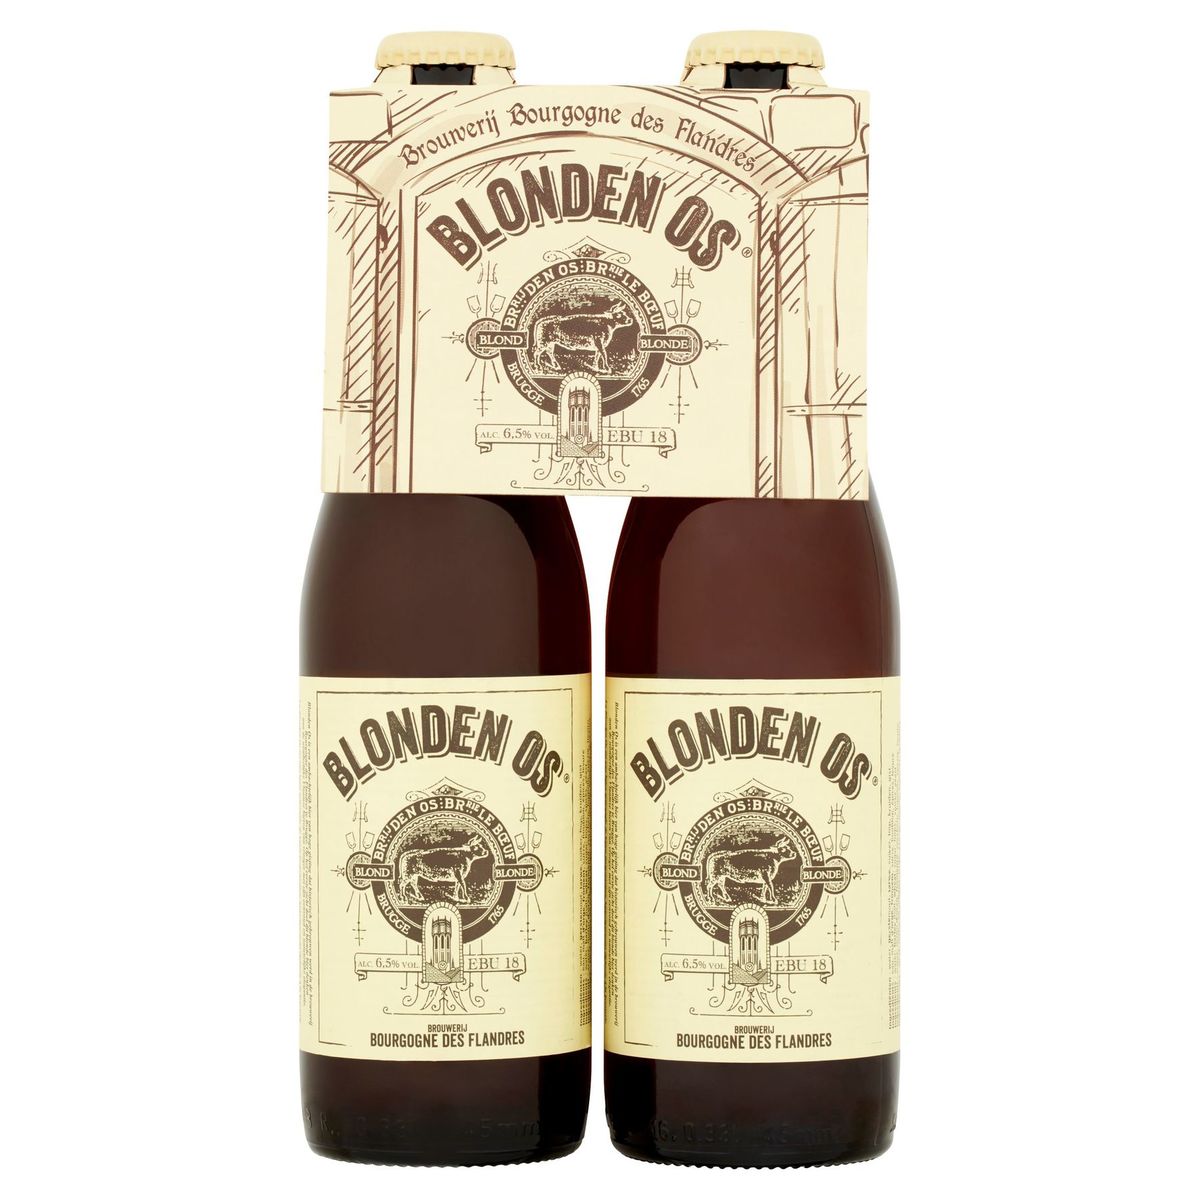 Bourgogne des Flandres Blonden Os Fles 4 x 33 cl